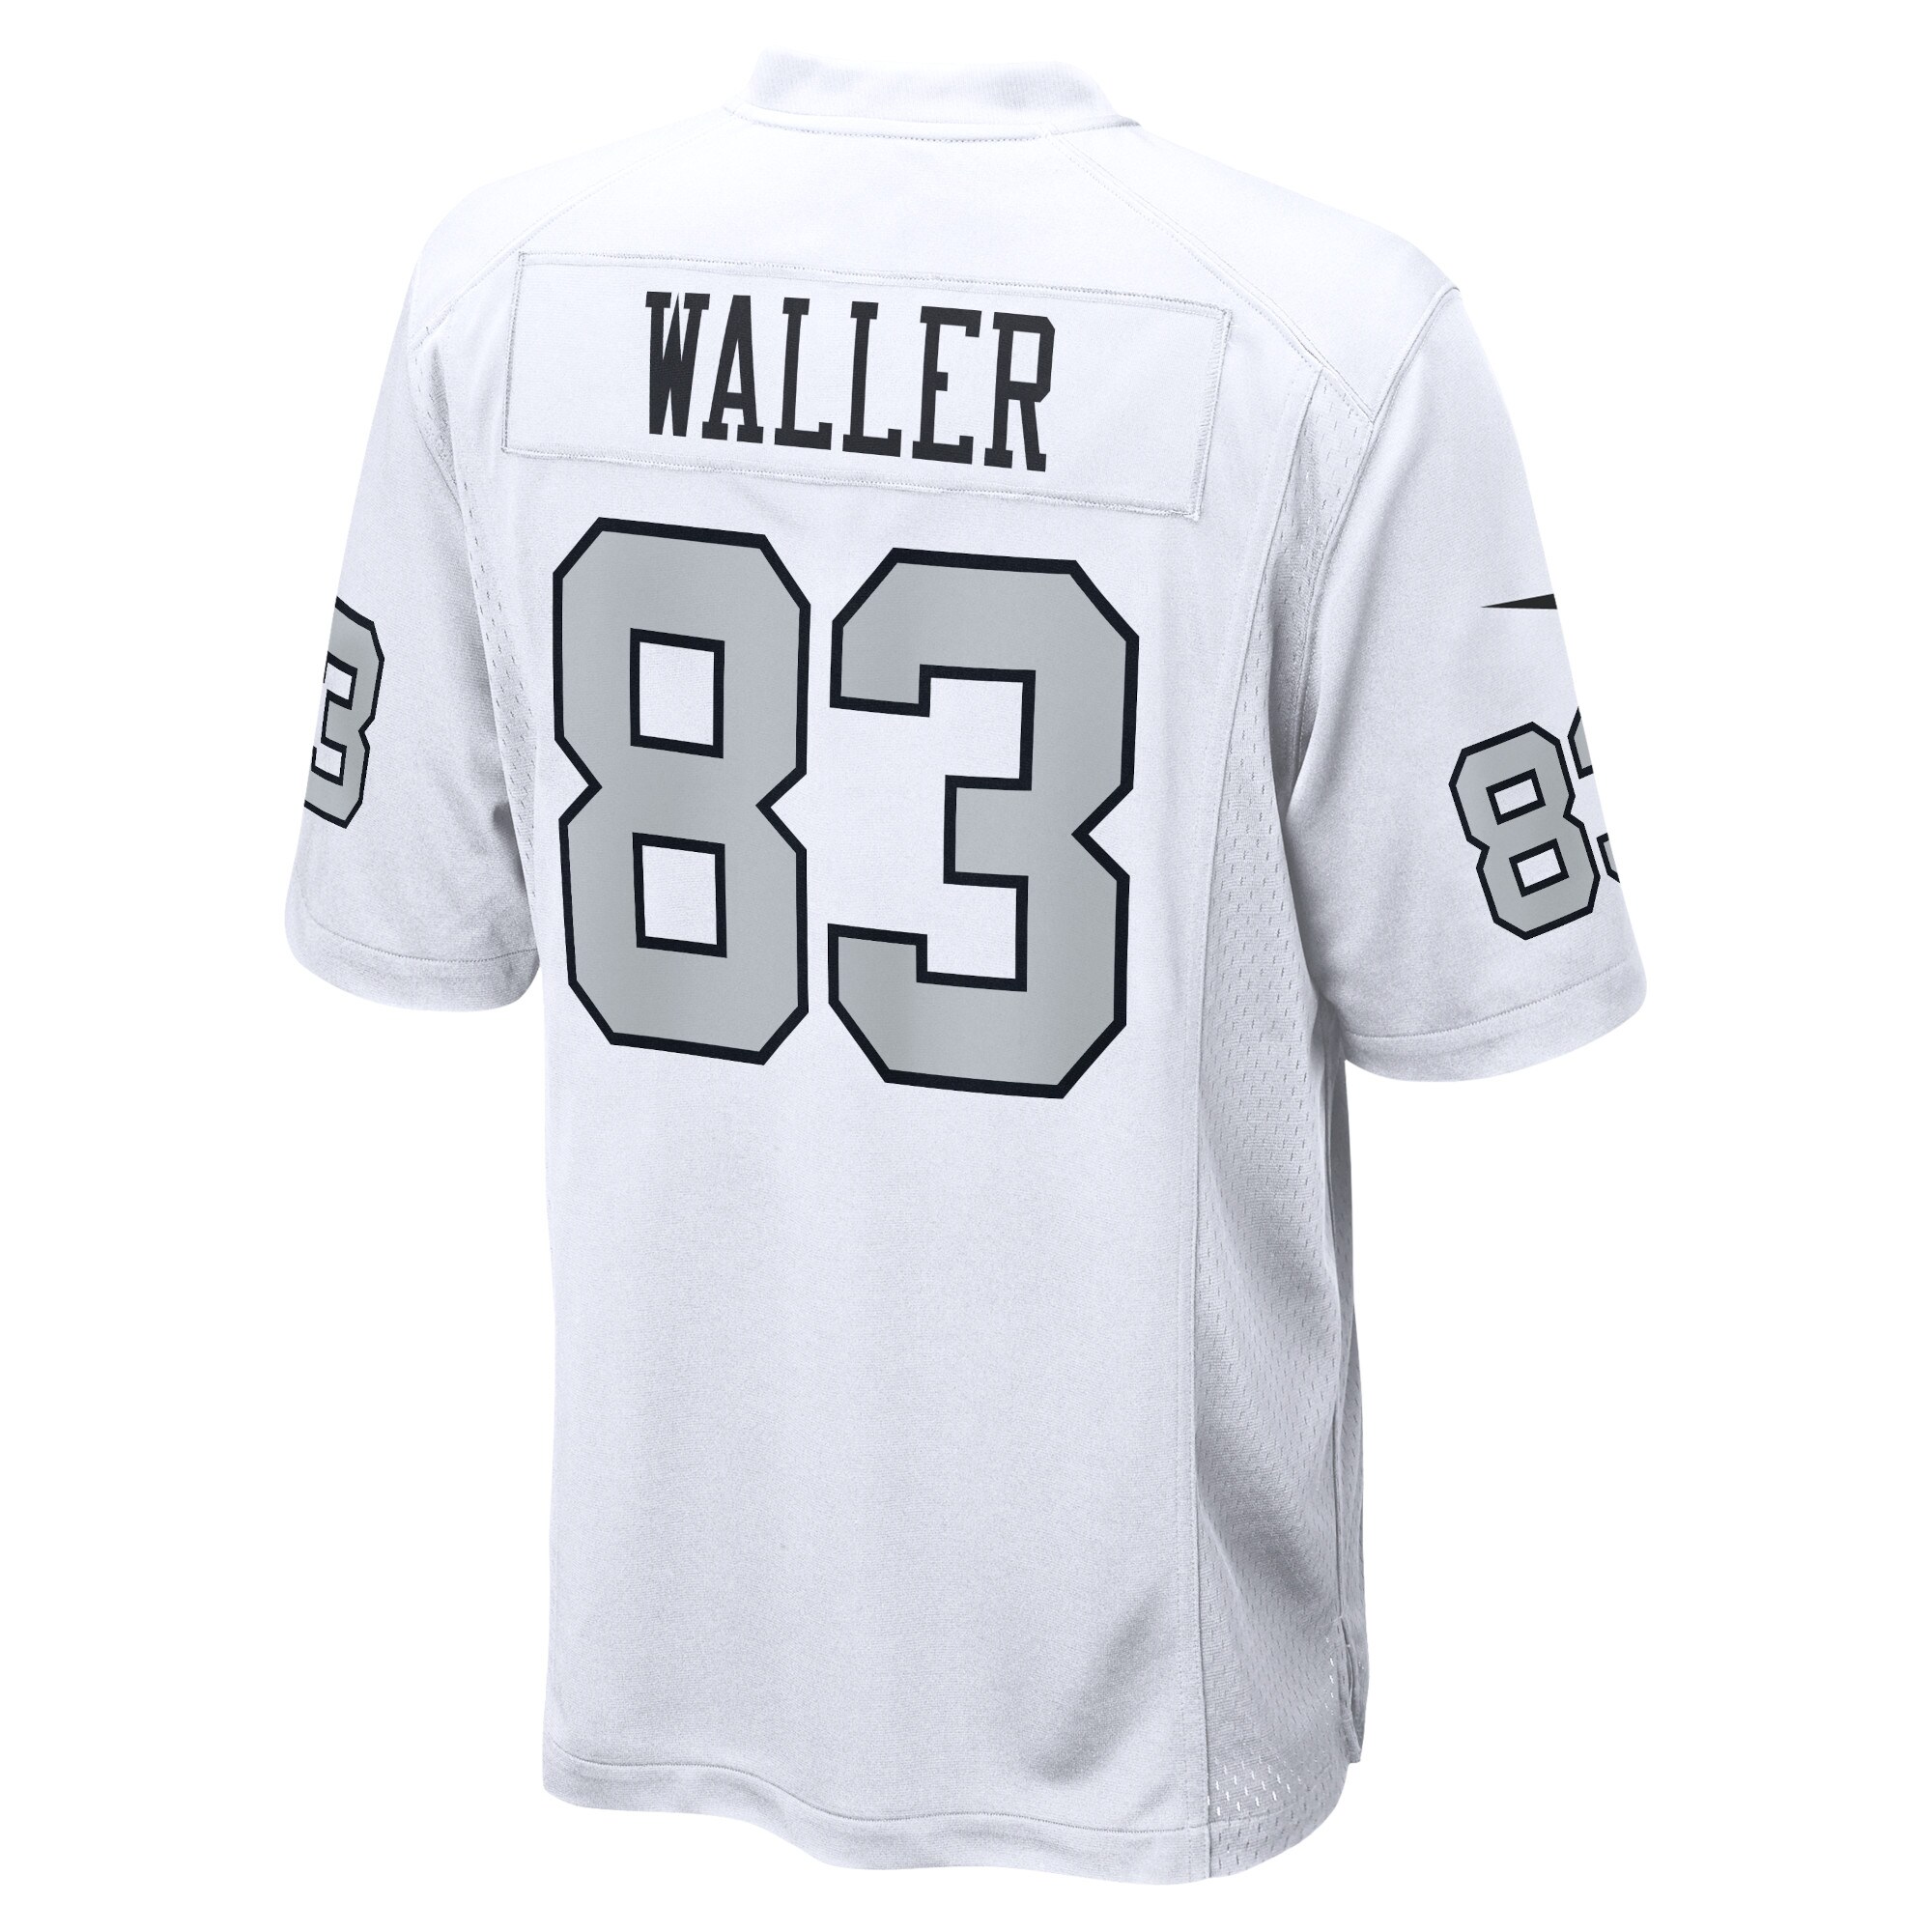 Men's Las Vegas Raiders Darren Waller Nike White Alternate Game Jersey